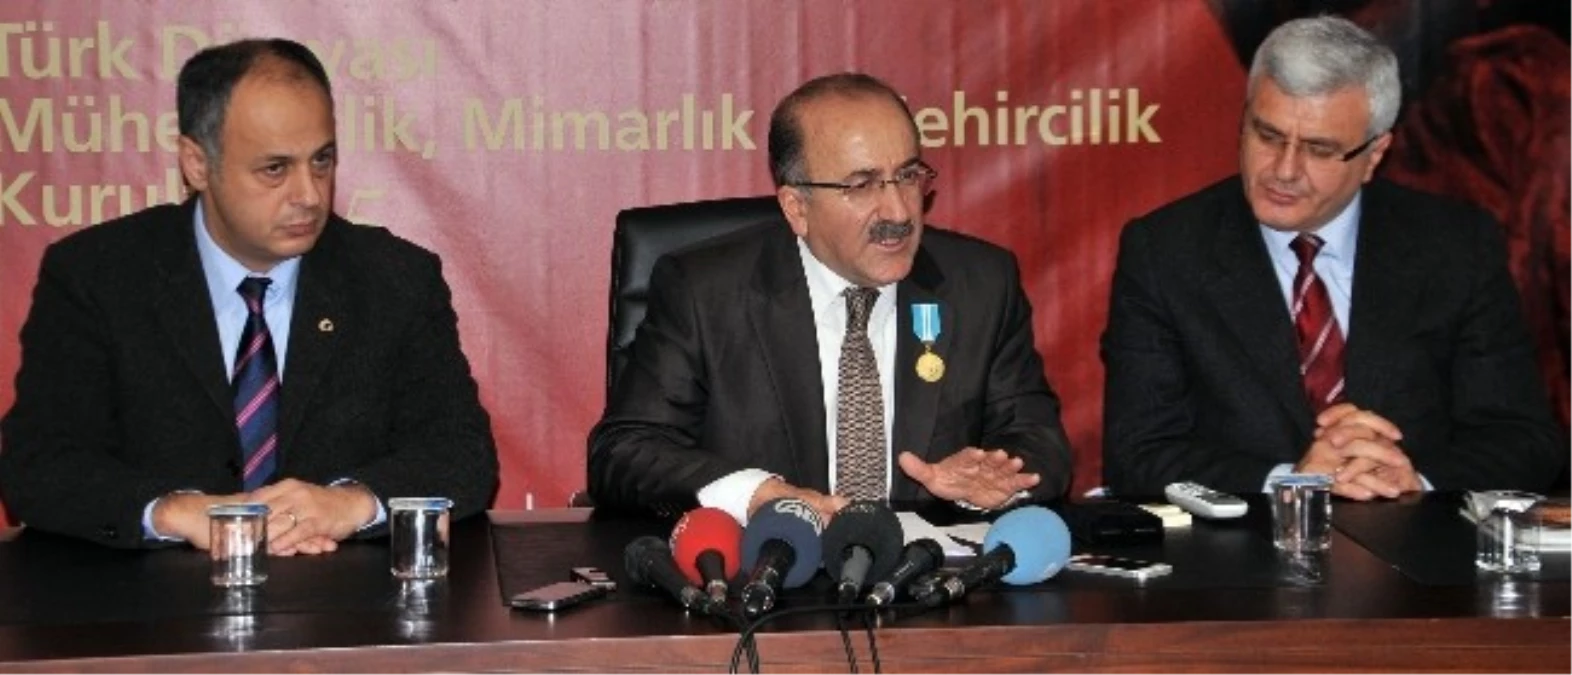 Trabzon Belediye Başkanı Gümrükçüoğlu Basın Mensuplarının Sorularını Cevaplandırdı